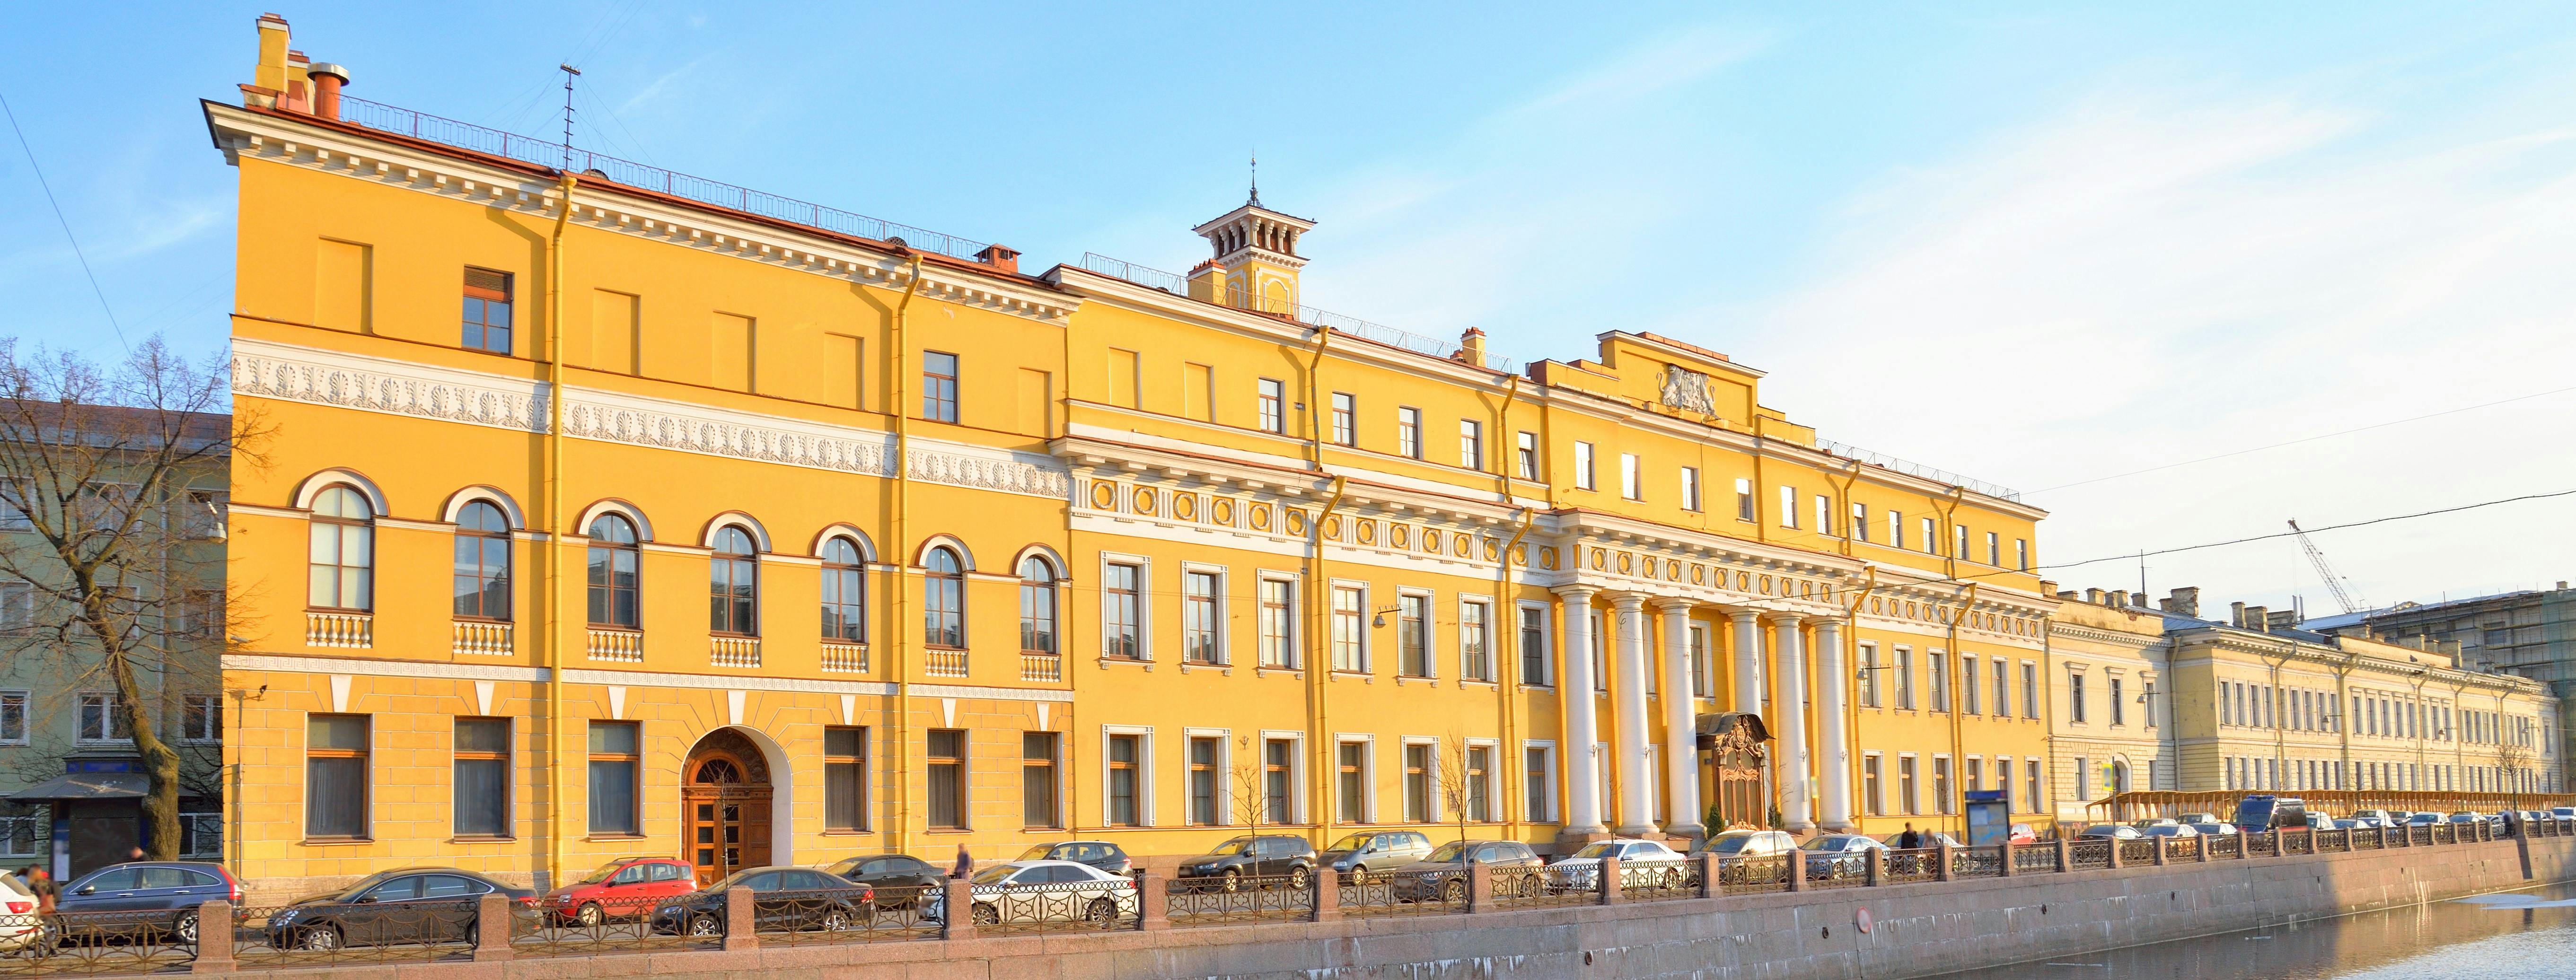 Palazzo Yusupov